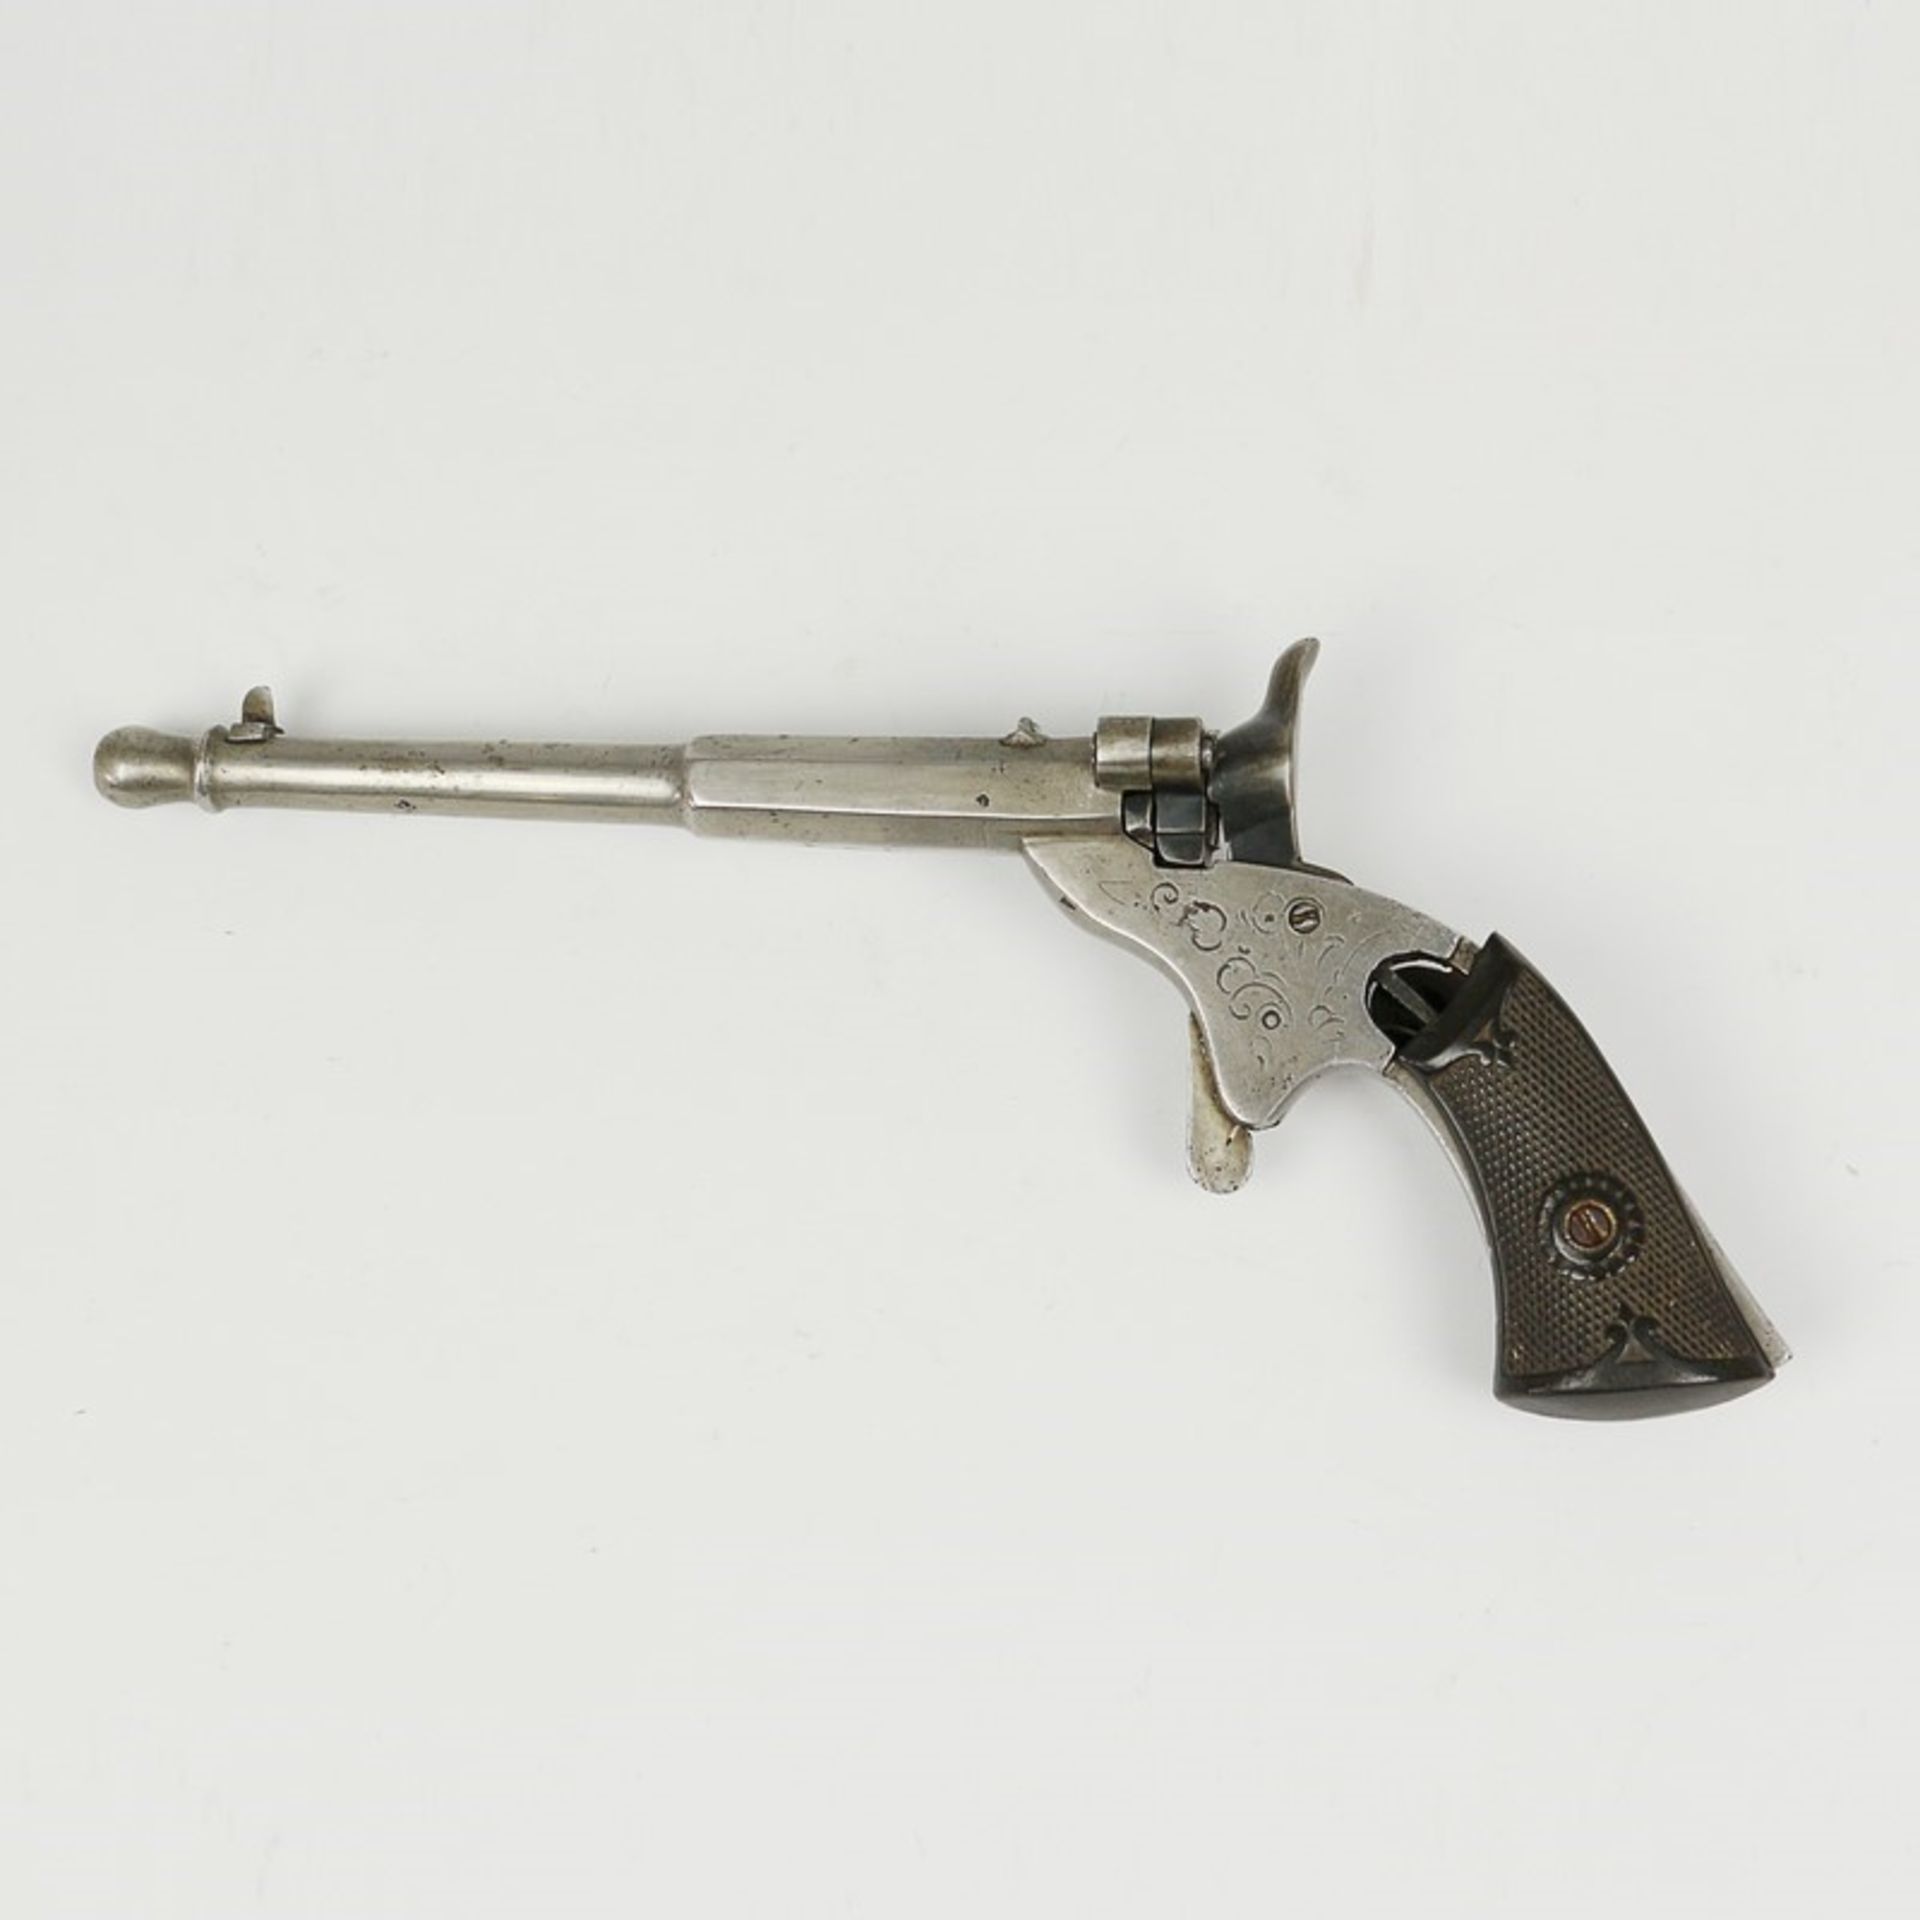 Pistole um 1900, gem. BGU unter 3x Kronen, Kleinkaliber, runder Lauf, partiell grav., stilisierter